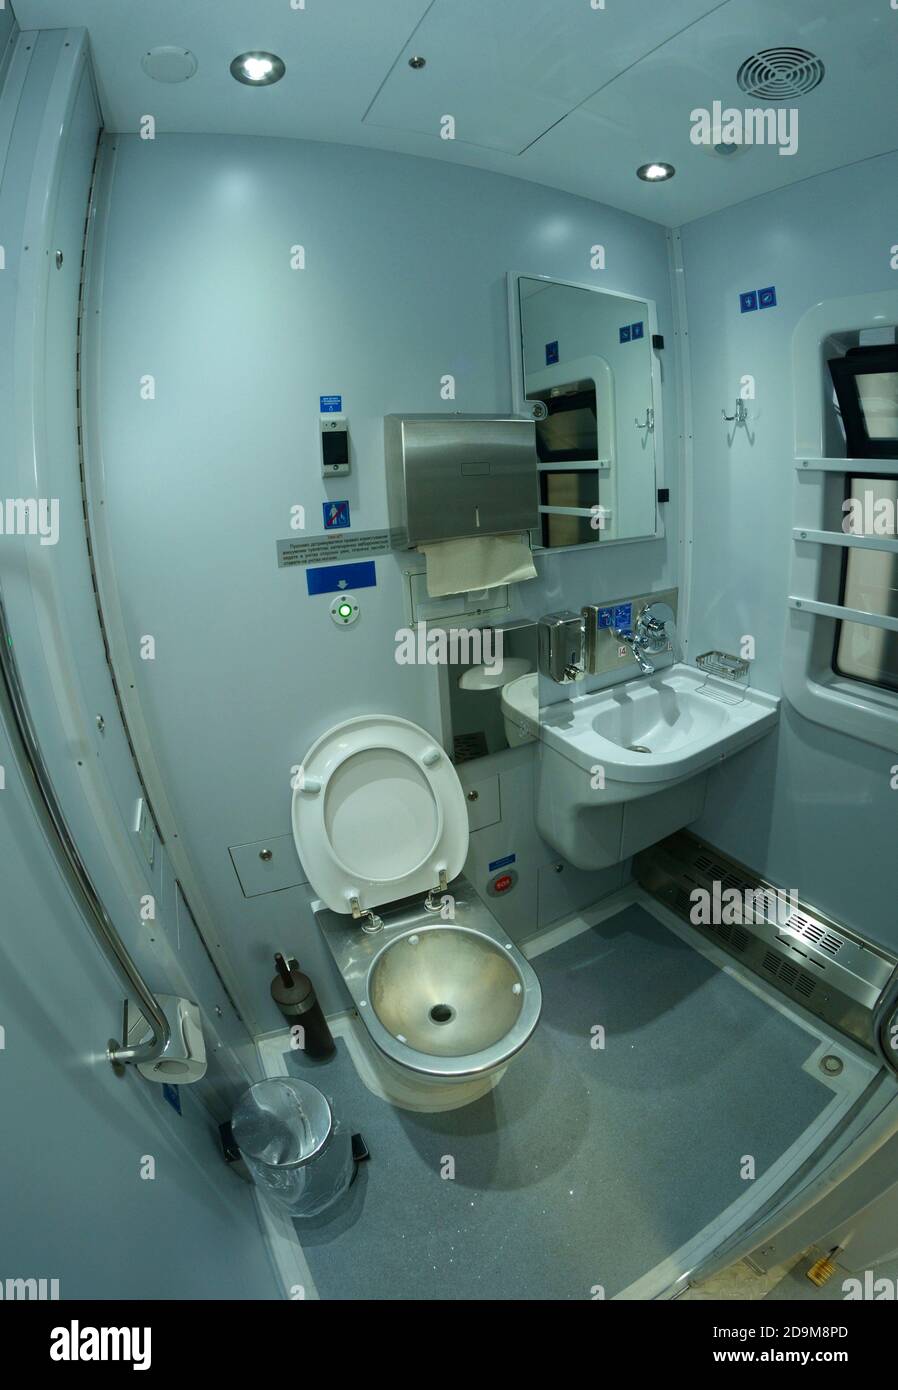 Toilette dans les chemins de fer train de nuit de première classe d'un train de passagers, cuvette de toilette, lavabo, miroirs et boîte en papier Banque D'Images